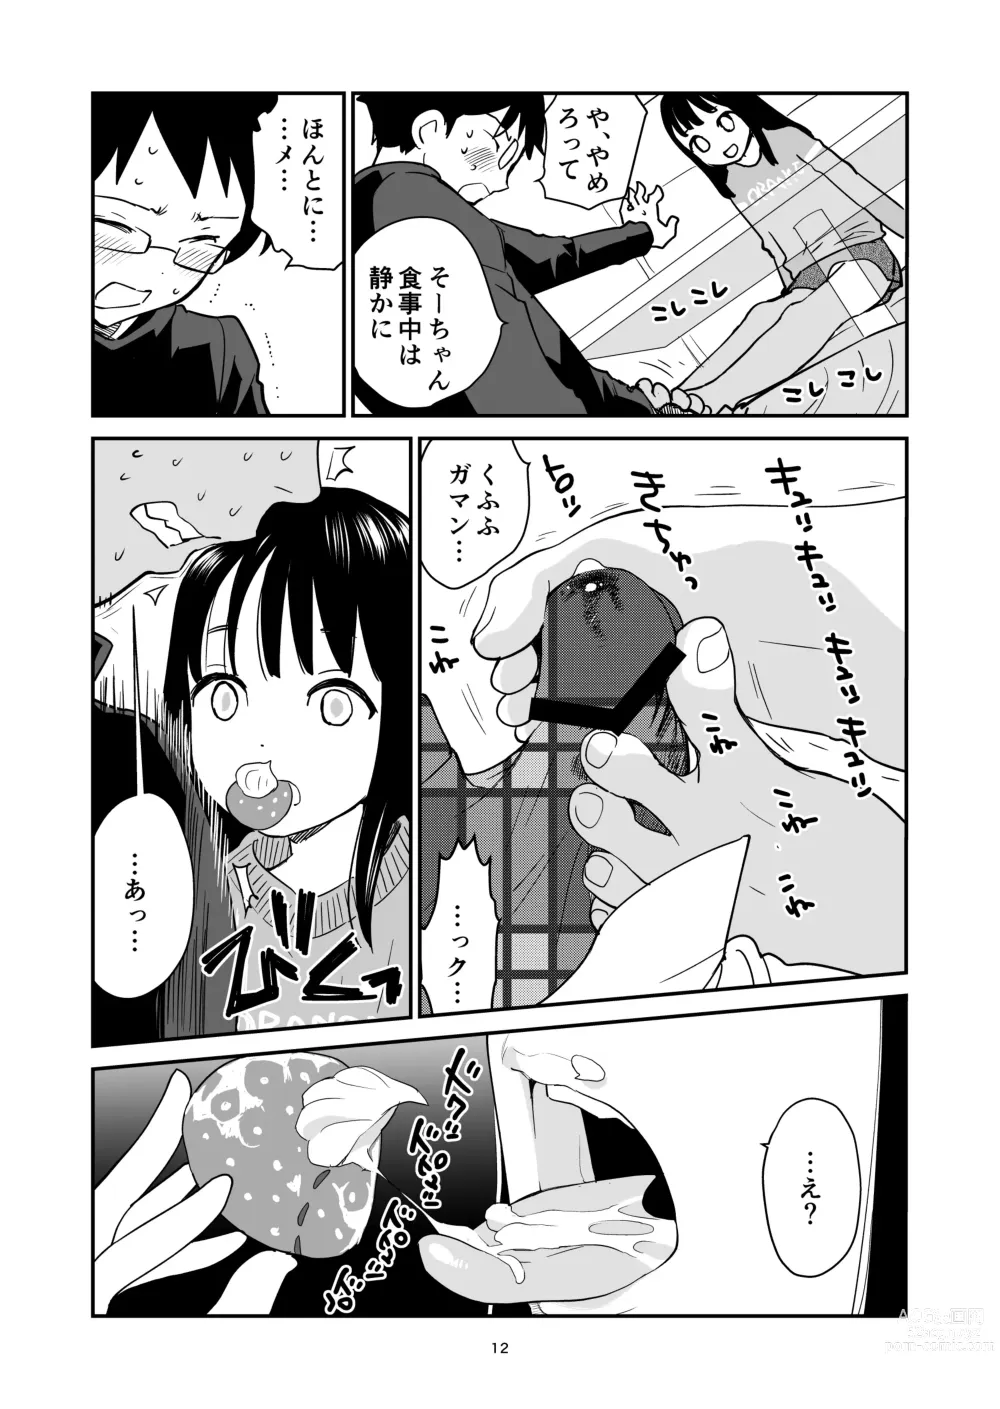 Page 12 of doujinshi ORANGE